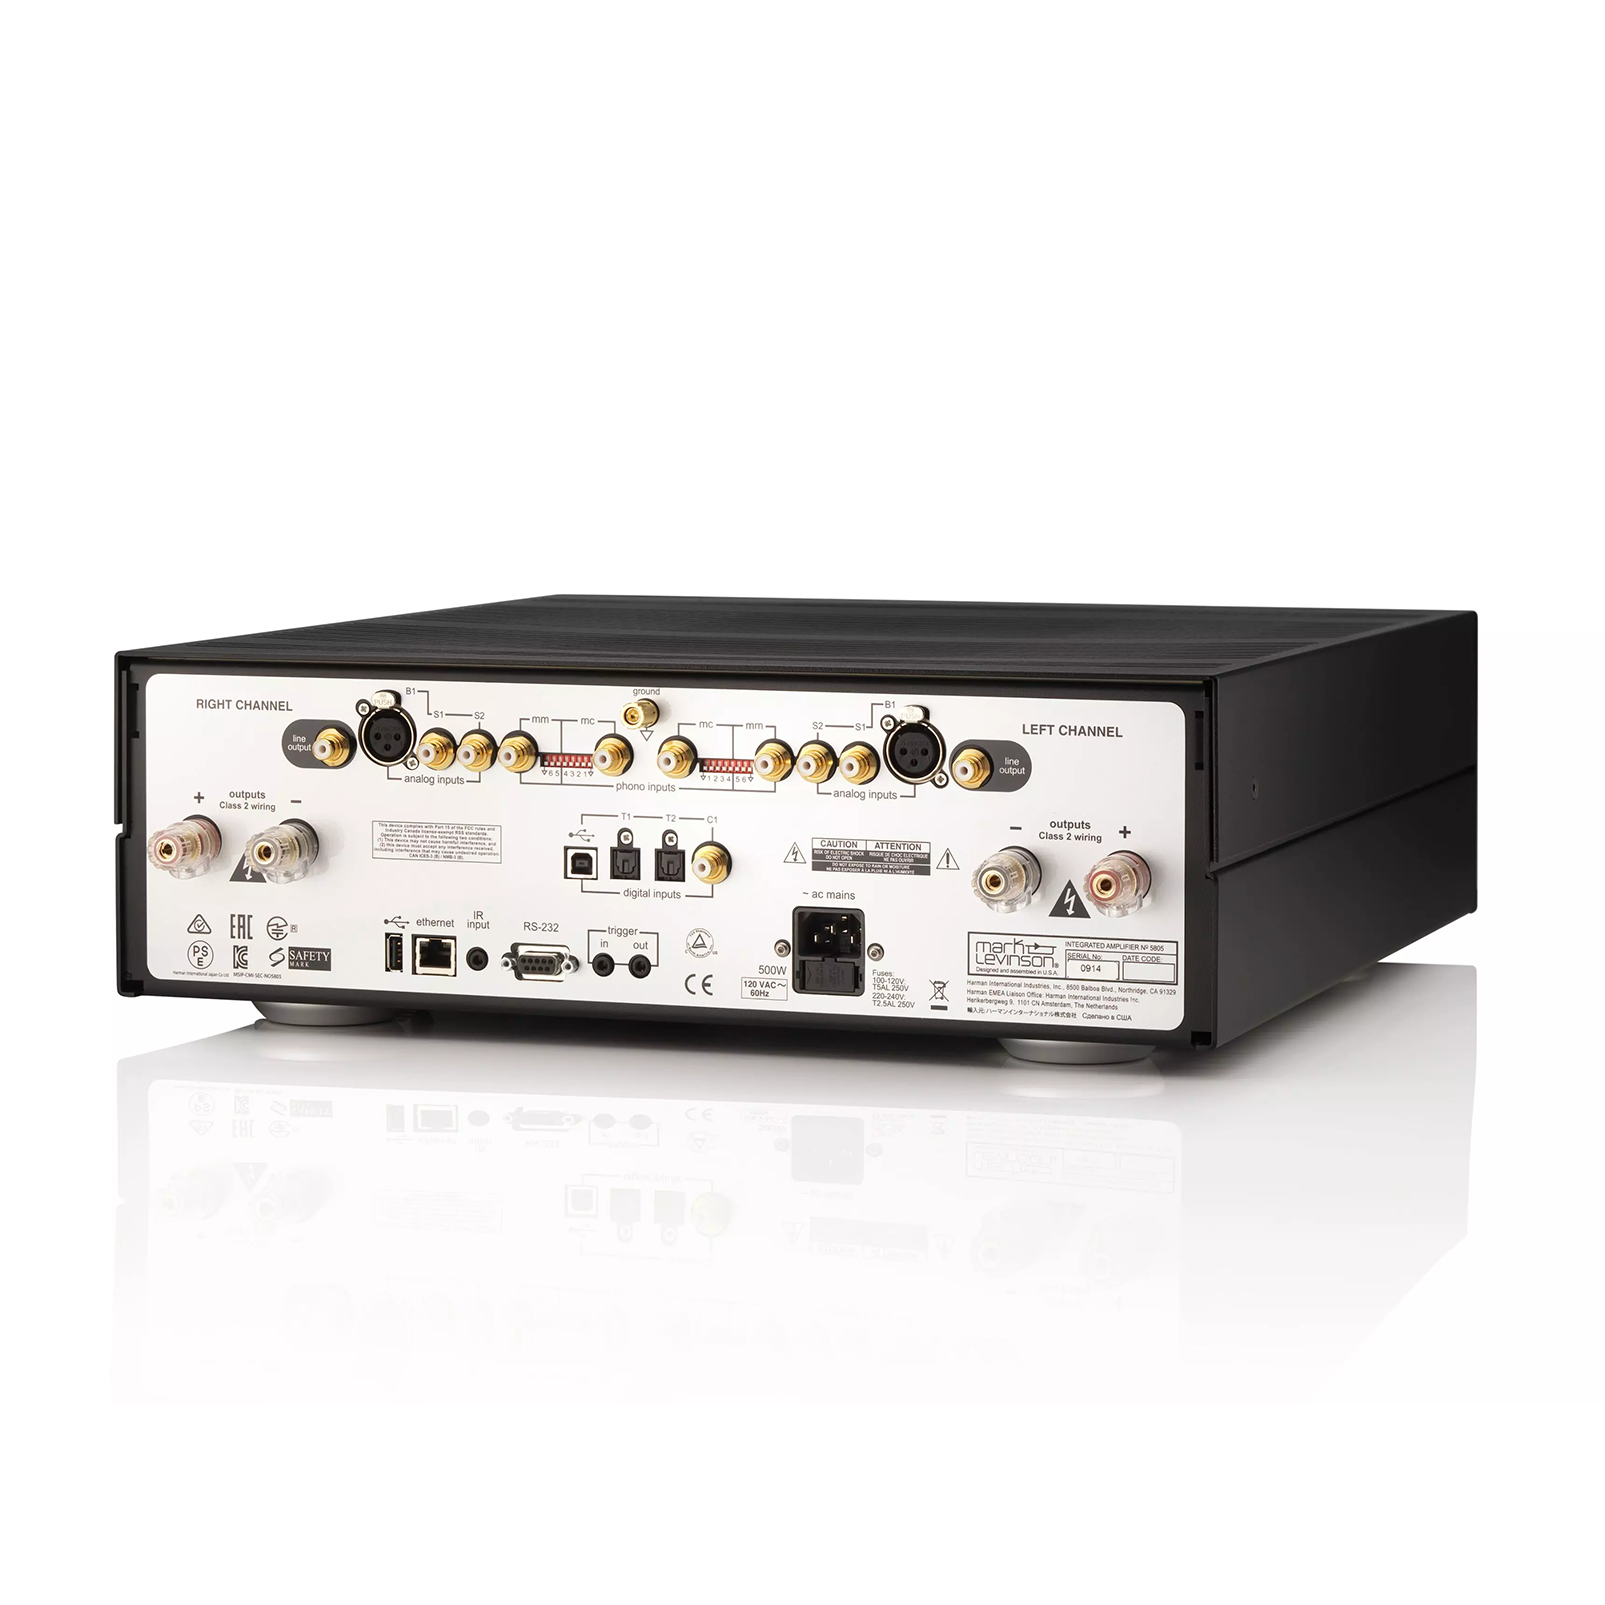 № 5805 - Black / Silver - Integrated Amplifier for Digital and Analog sources - Detailshot 1